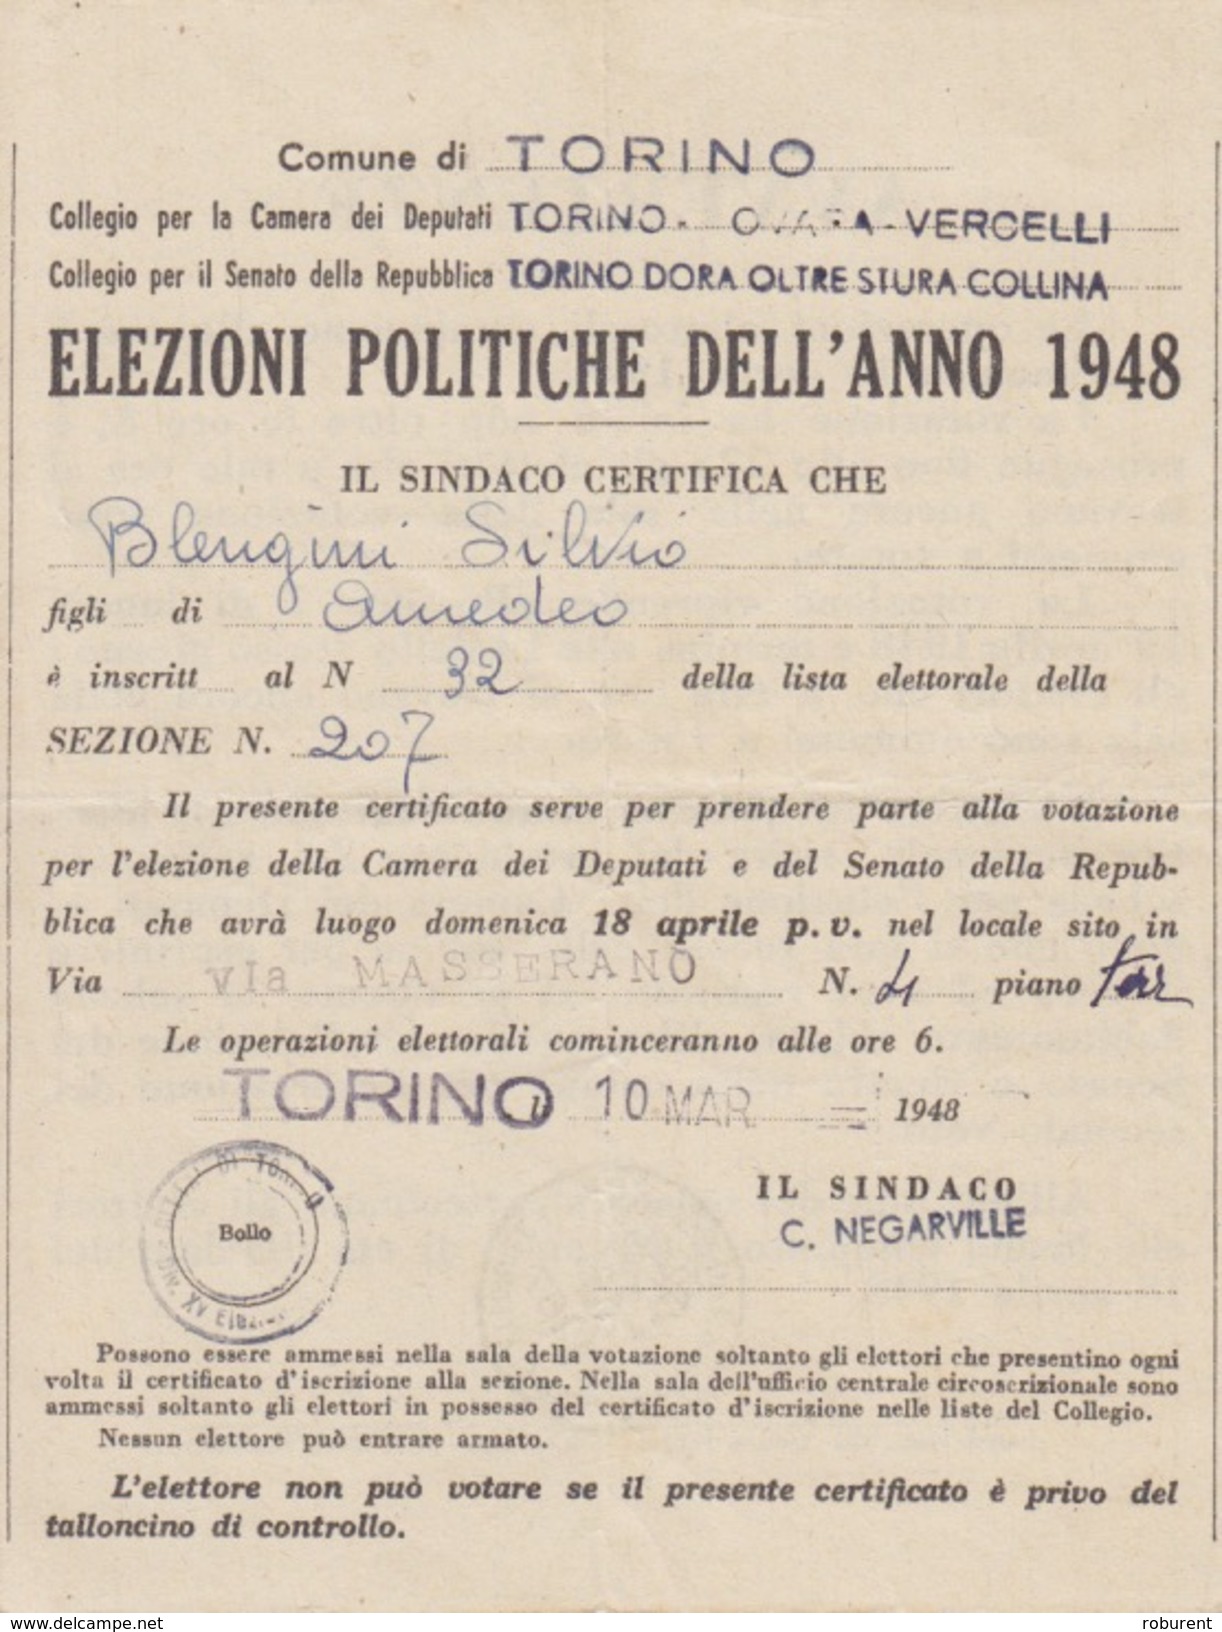 TORINO - "ELEZIONI POLITICHE DELL'ANNO 1948" - CERTIFICATO ELETTORALE PER L'ELEZIONI DEL 18 APRILE 1948 - Documenti Storici